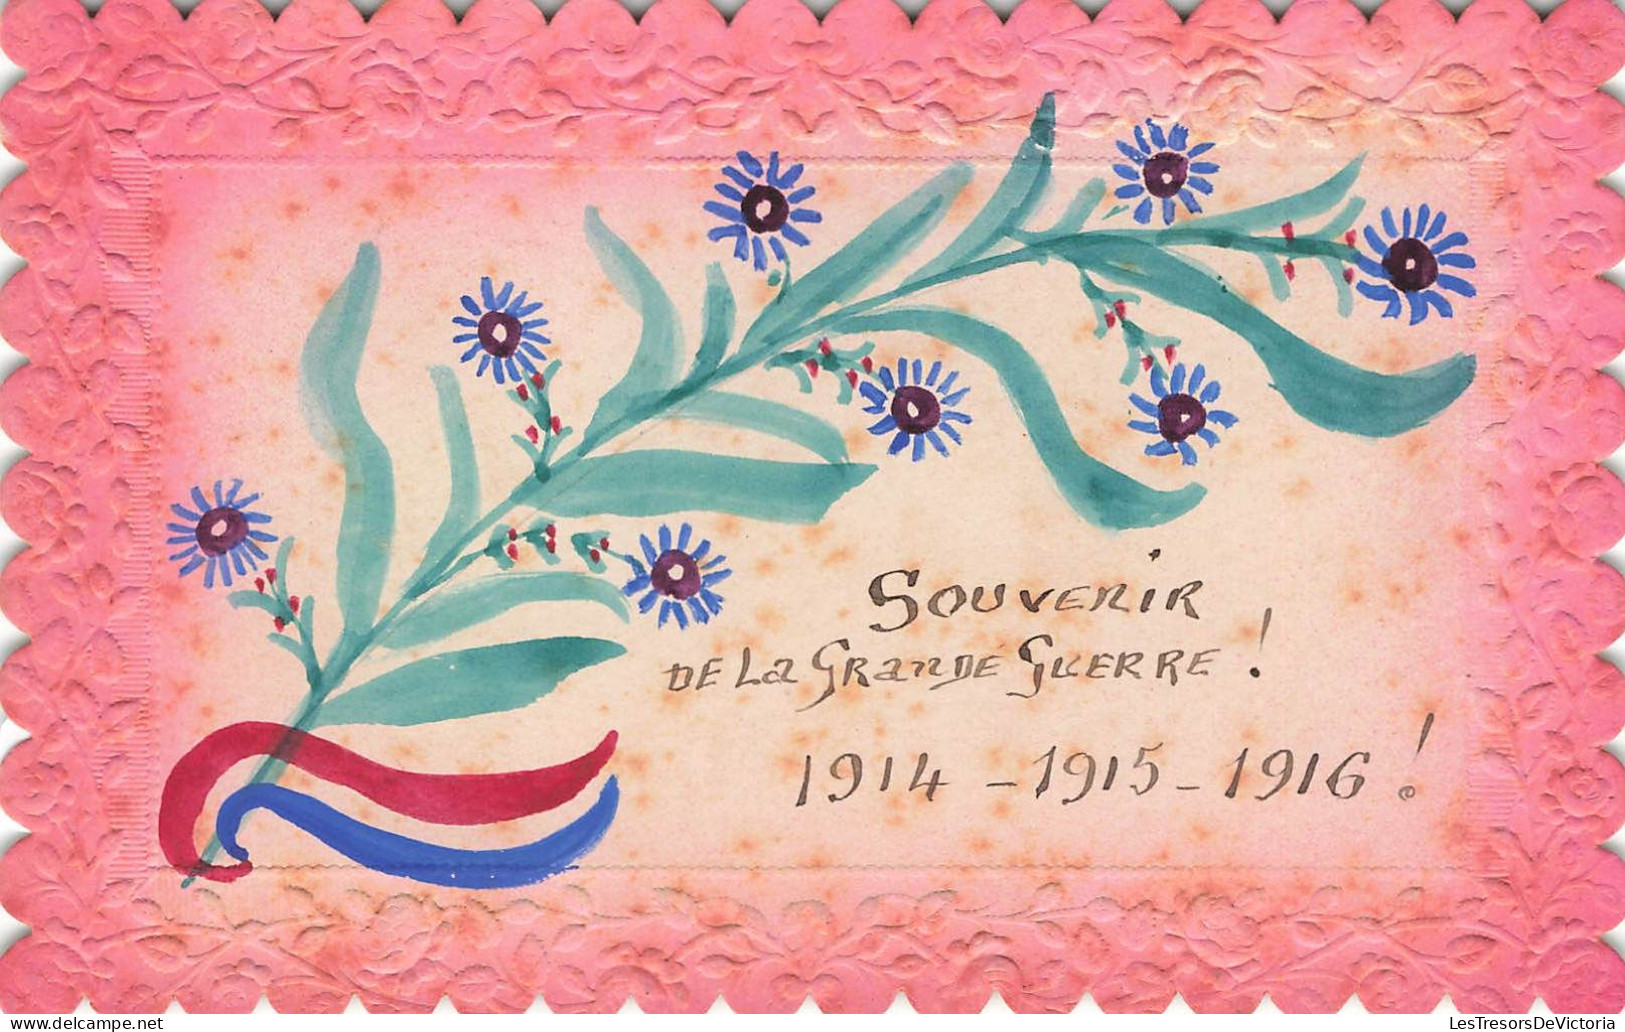 SOUVENIR DE - Souvenir De La Grande Guerre! 1914 - 1915 - 1916 - Colorisé - Carte Postale Ancienne - Saluti Da.../ Gruss Aus...